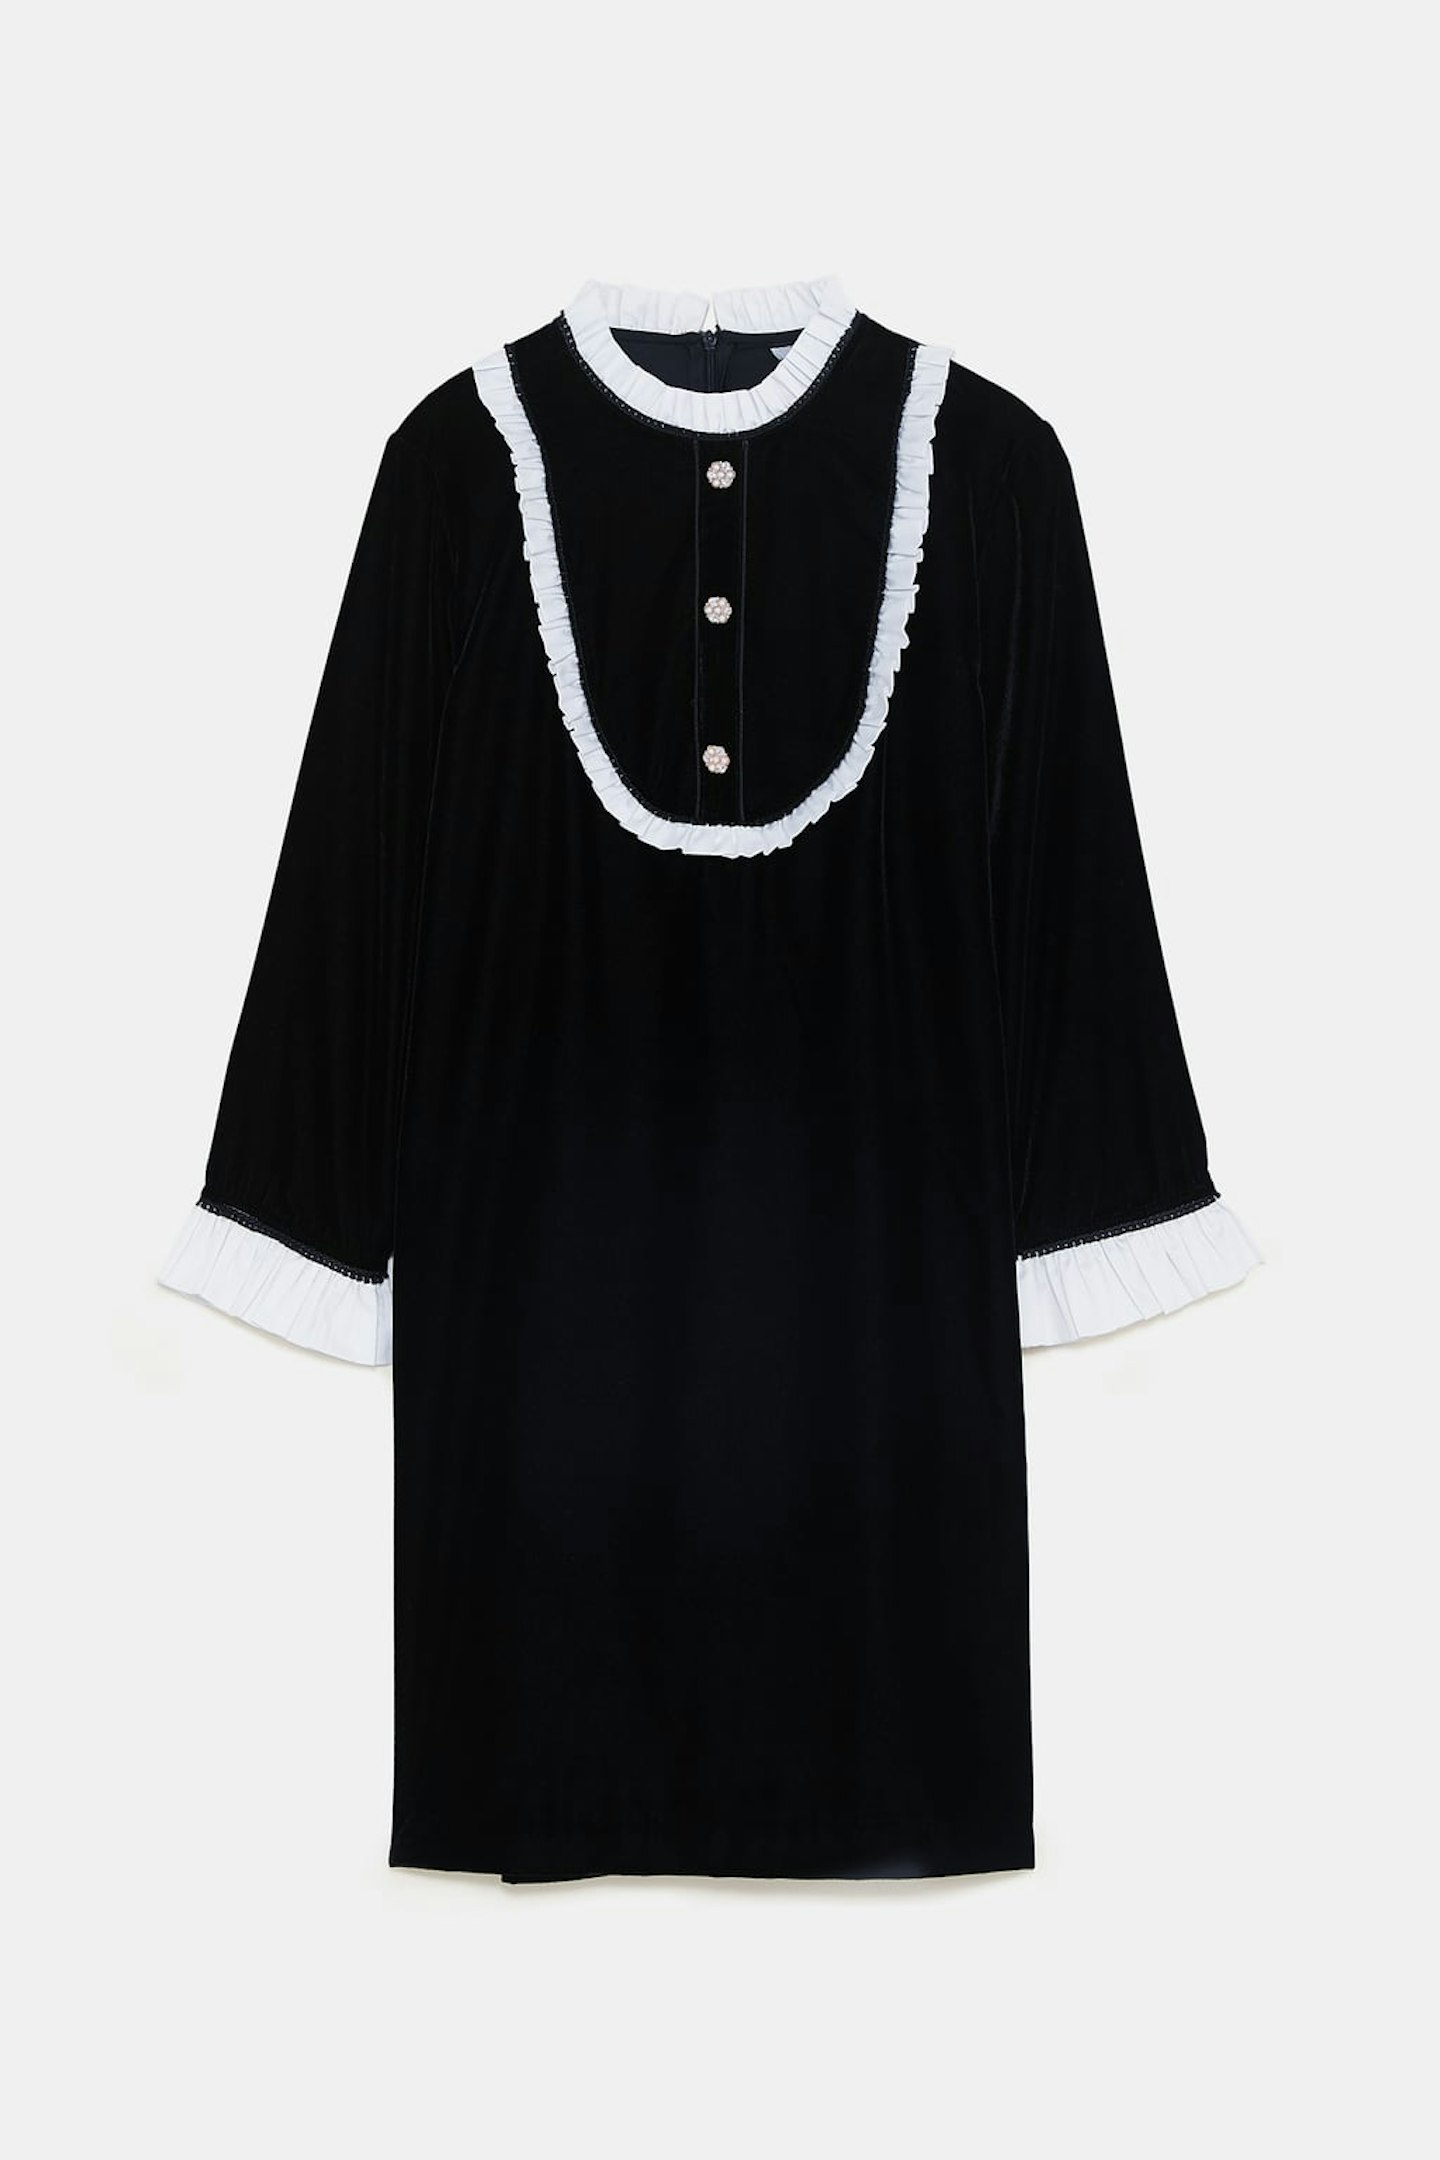 Zara, Contrast Velvet Dress, £39.99